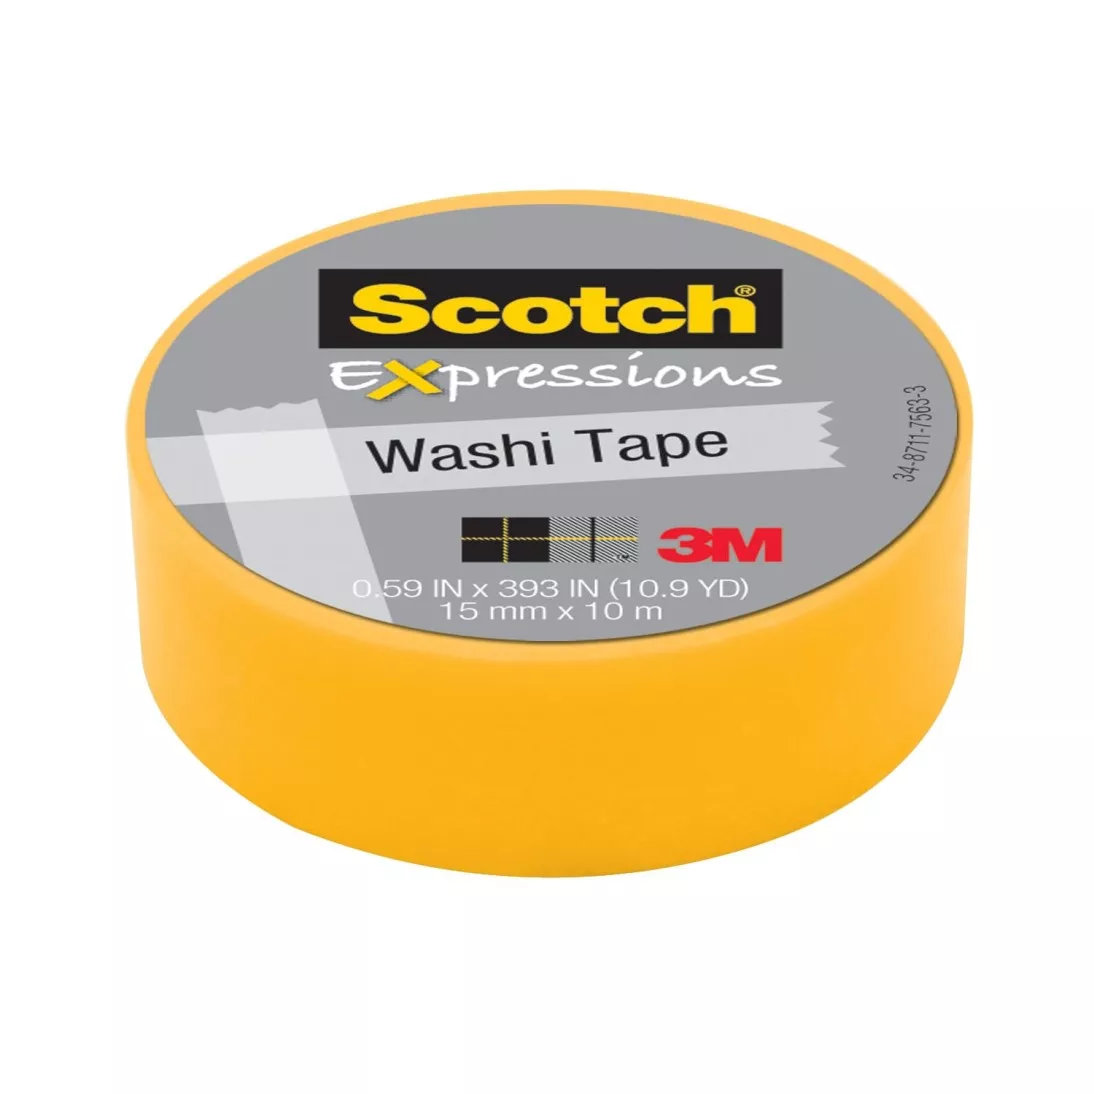 Washi Tapes